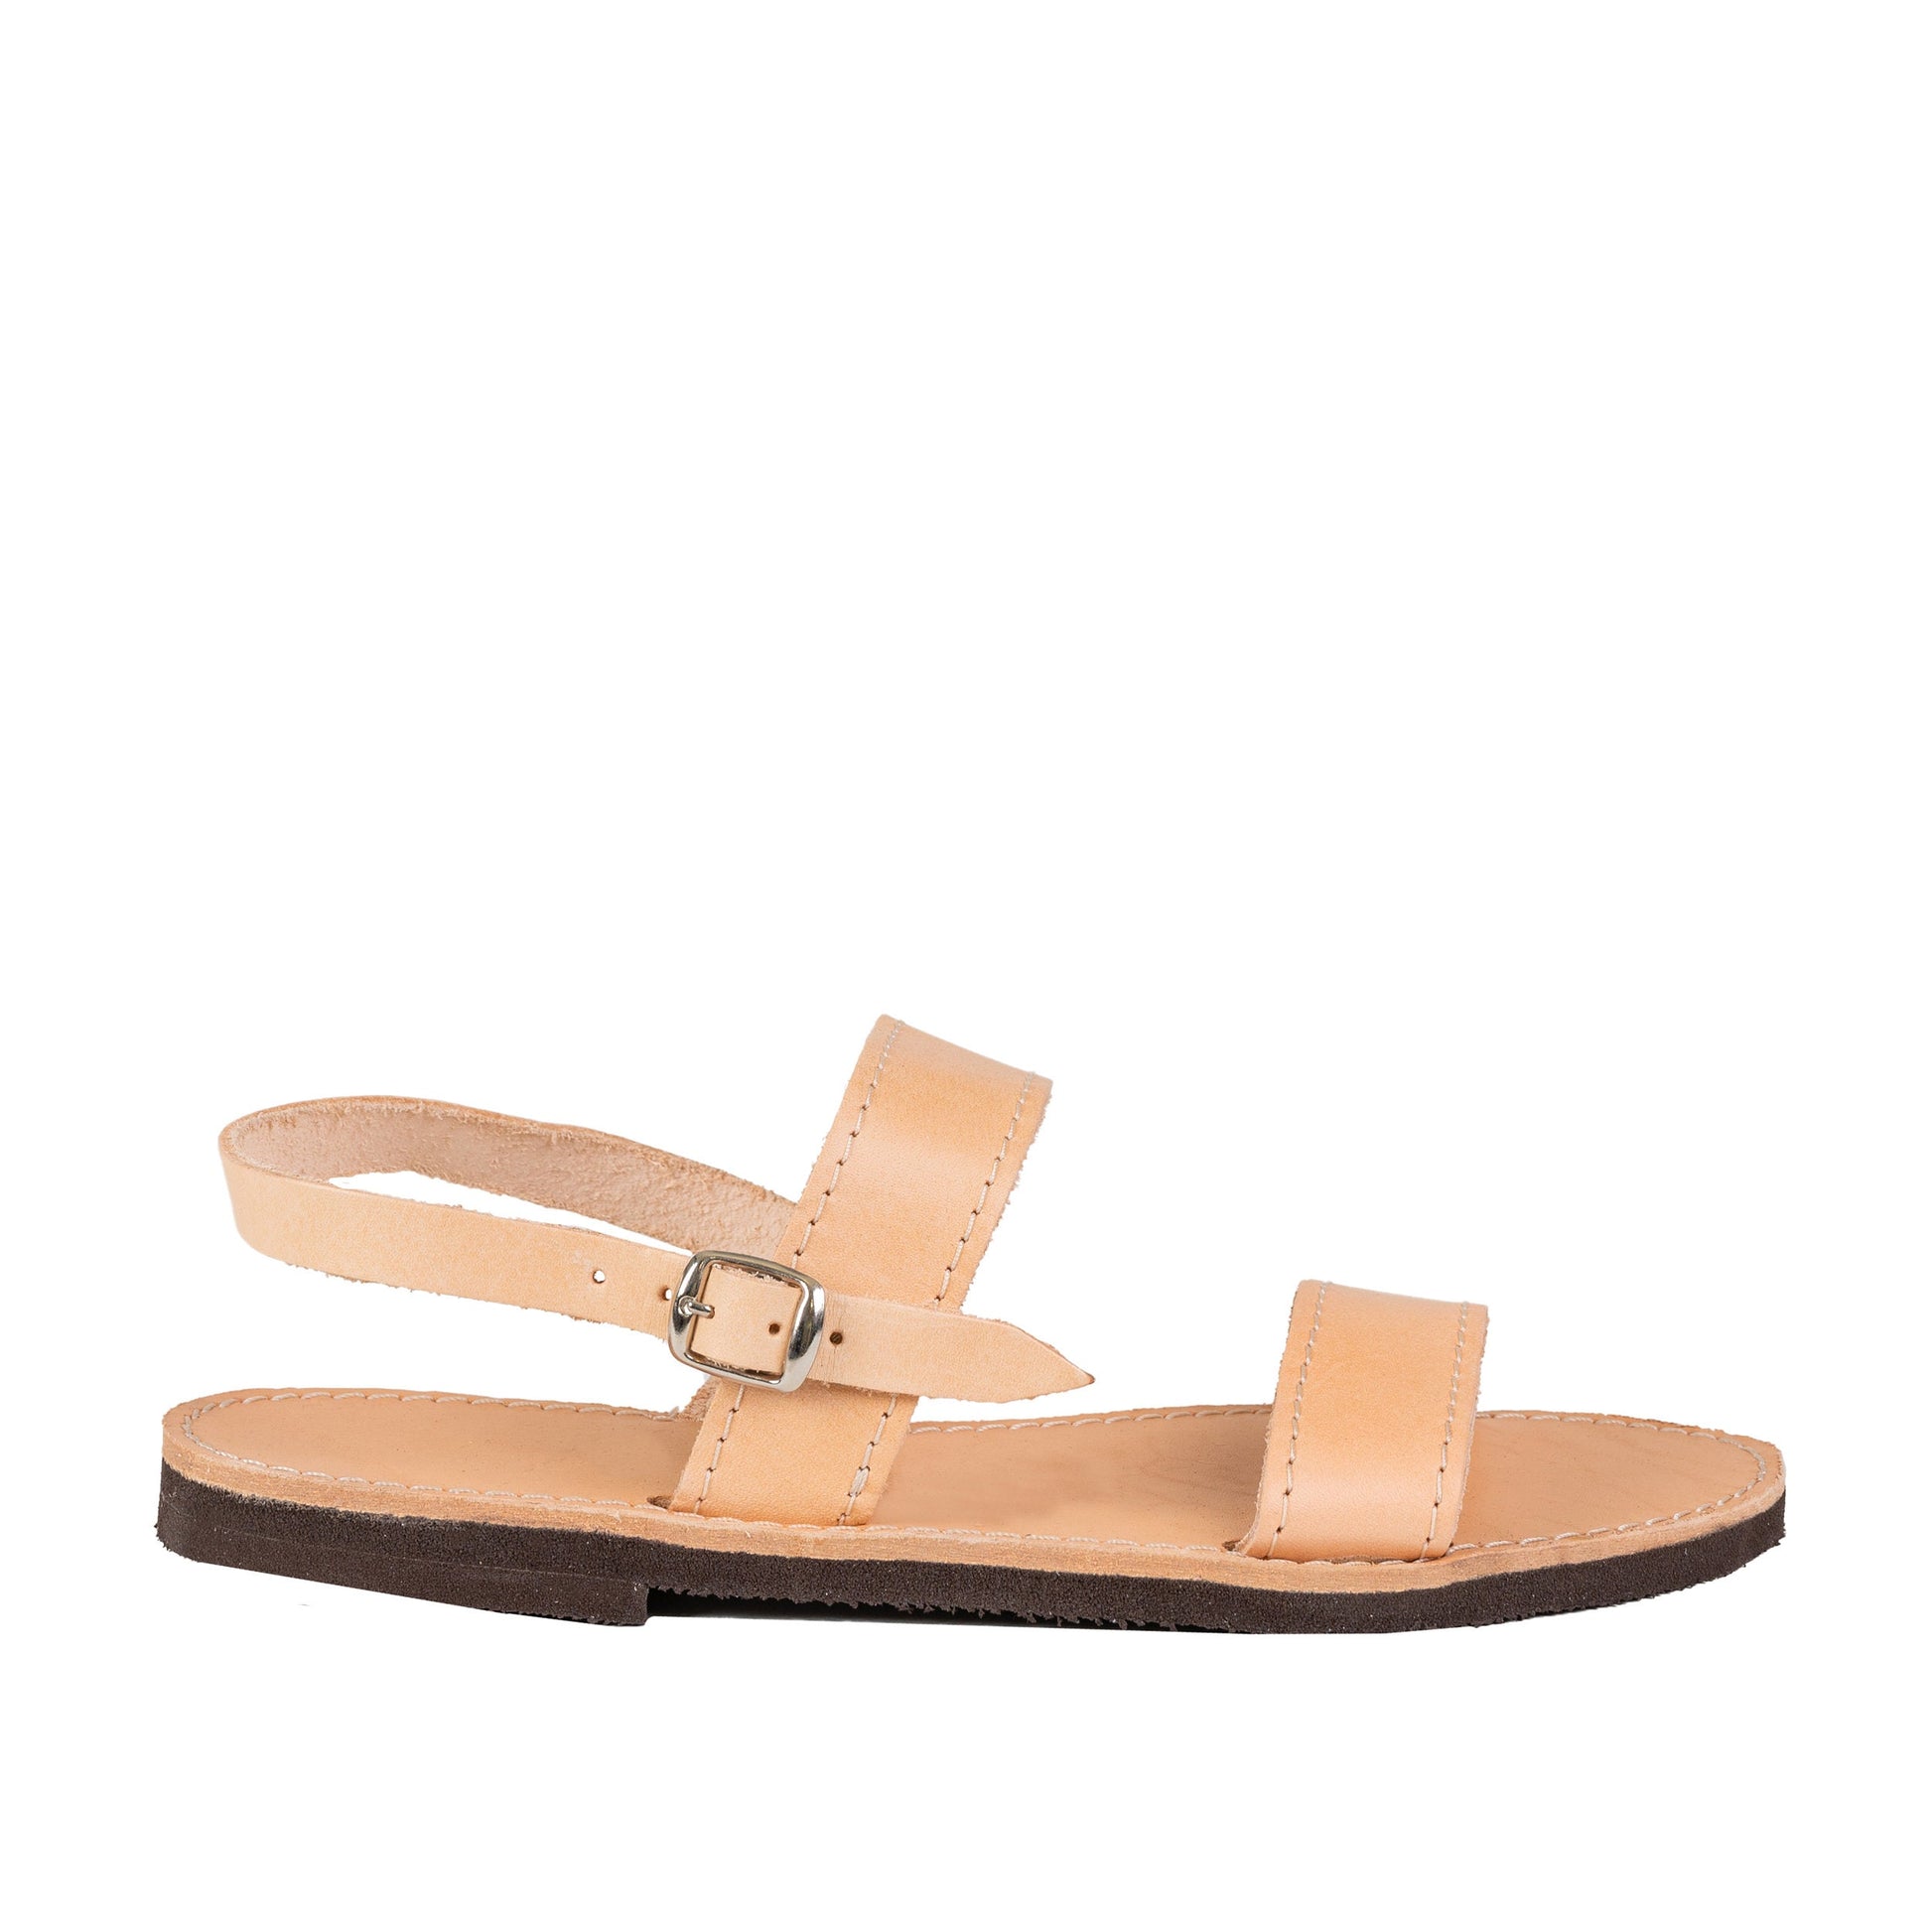 Greek leather sandals women, Minimalist flat sandals, Leather slide slingback sandals, Sandales grecques